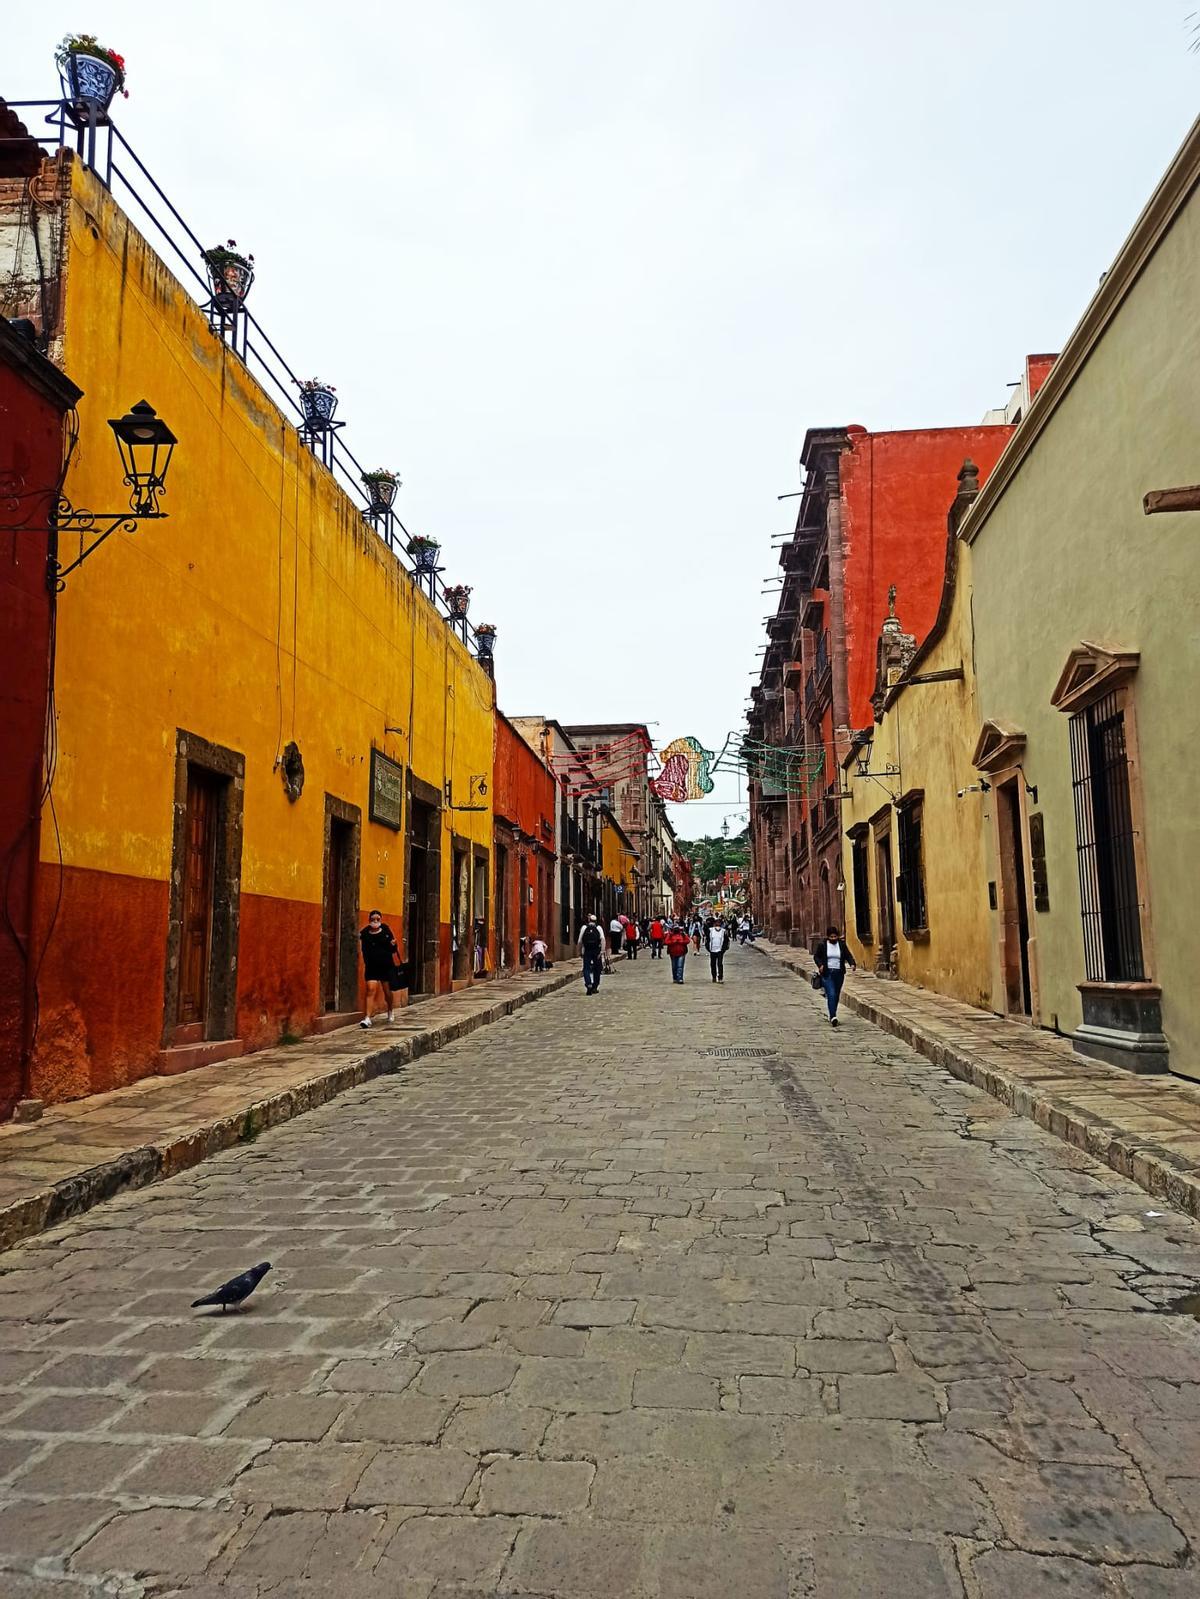 Calles del centro de San Miguel de Allende